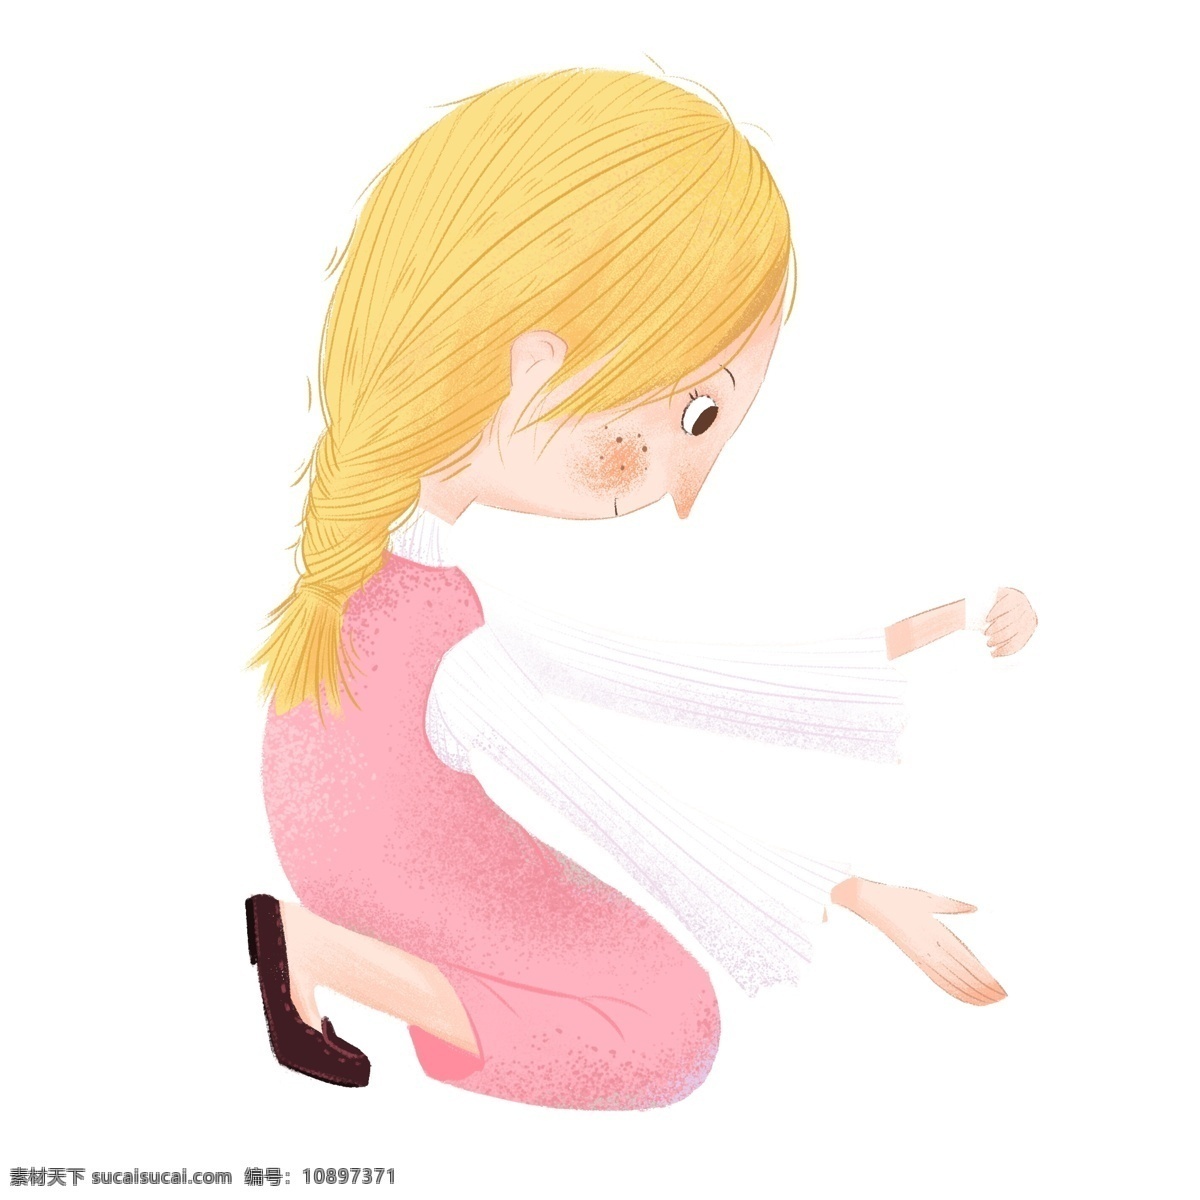 清晰 可爱 蹲 地上 女孩 卡通 儿童 女生 金发 插画 人物设计